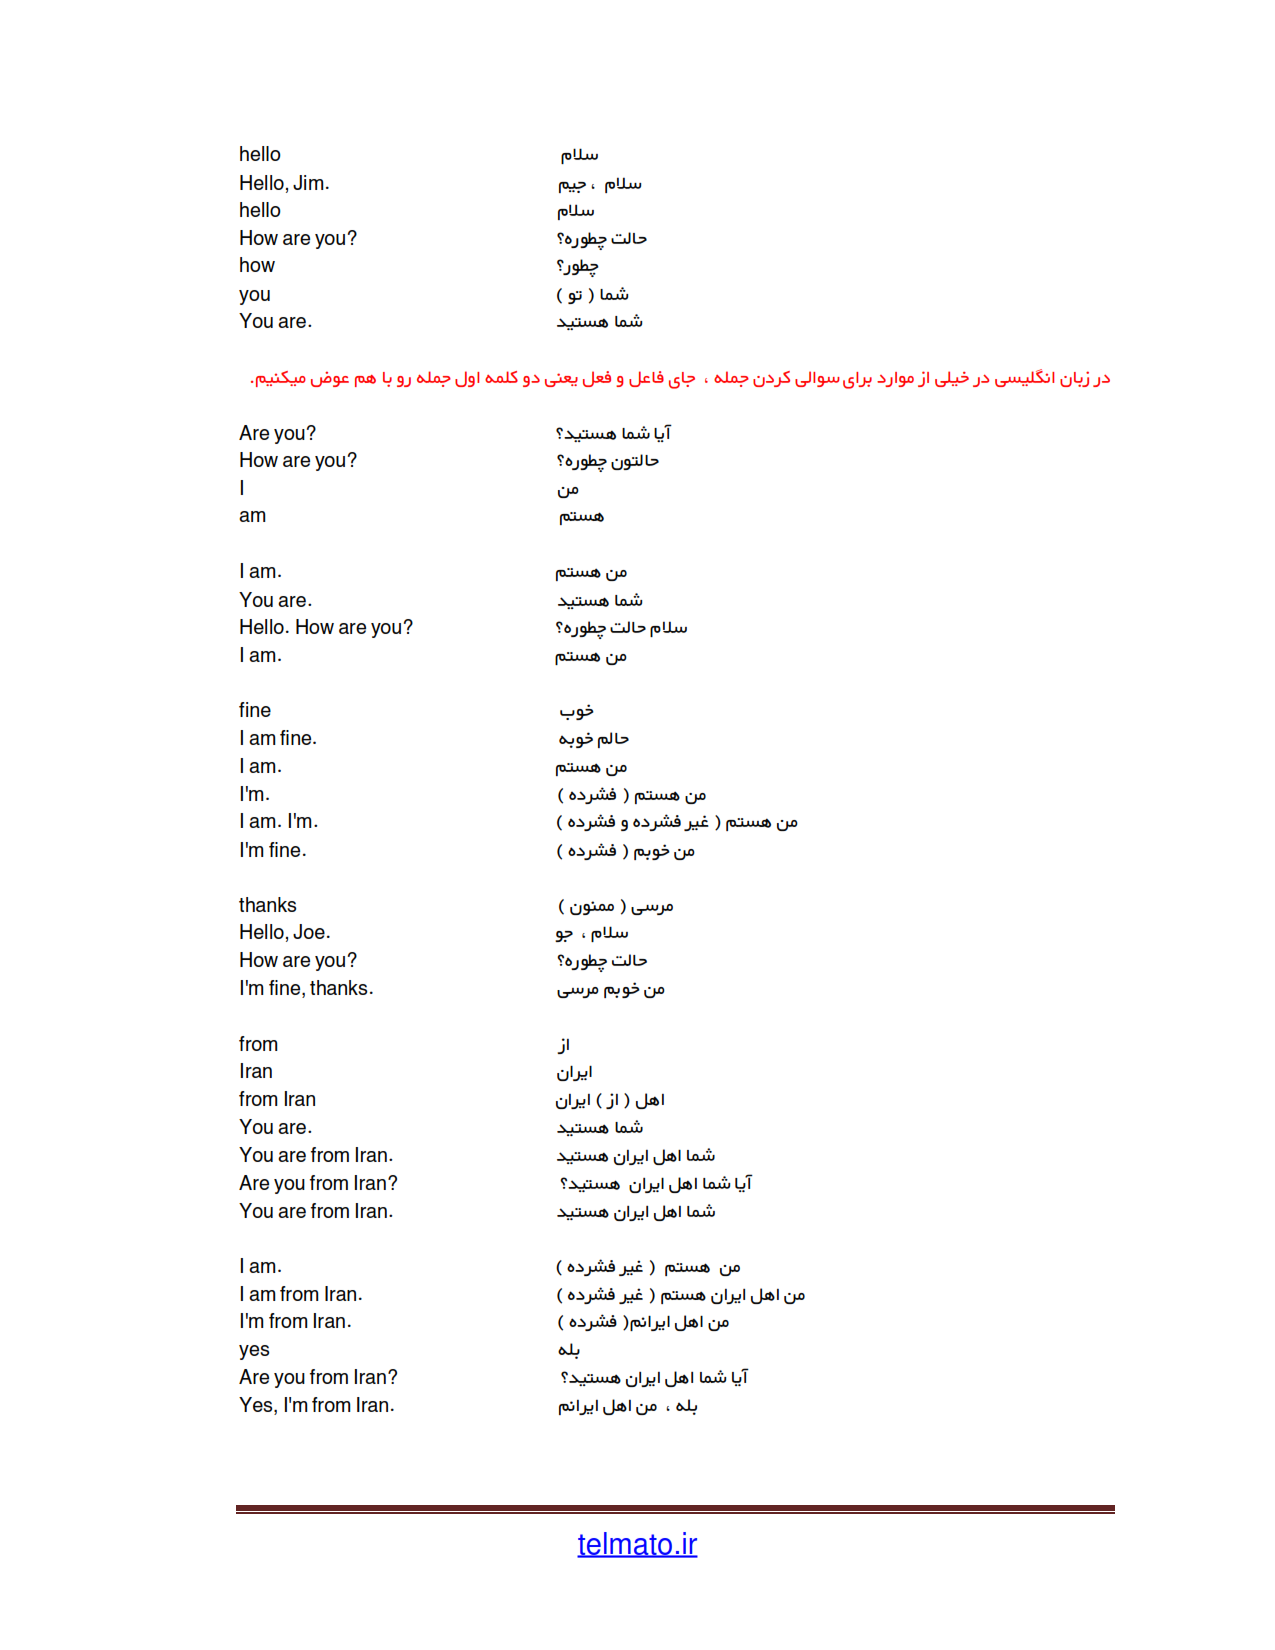 دانلود فایل pdf کتاب آموزش زبان انگلیسی نصرت در 90 روز | متن دروس زبان نصرت در 3 ماه رایگان 